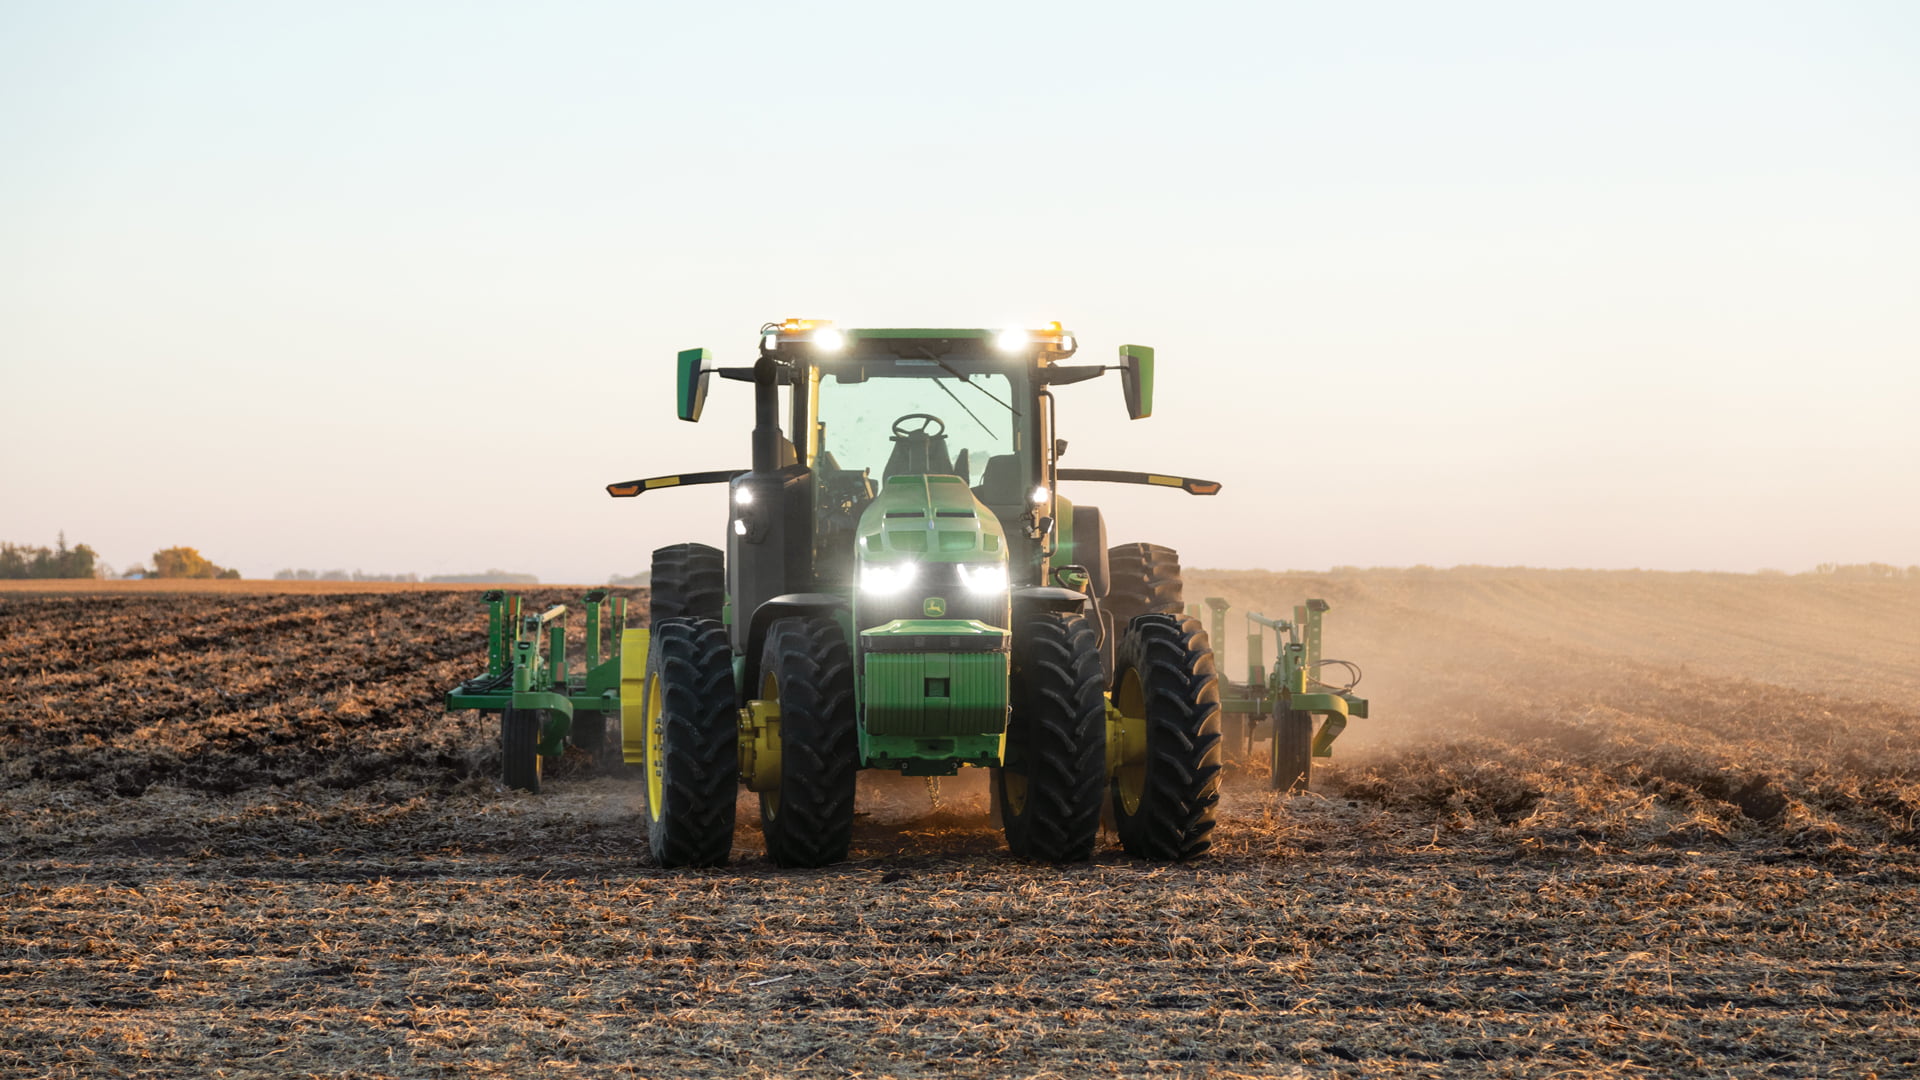 John Deere stellt einen autonom fahrenden Traktor vor, der Bauern künftig die Arbeit abnehmen soll. Was kann der Robo-Trecker?